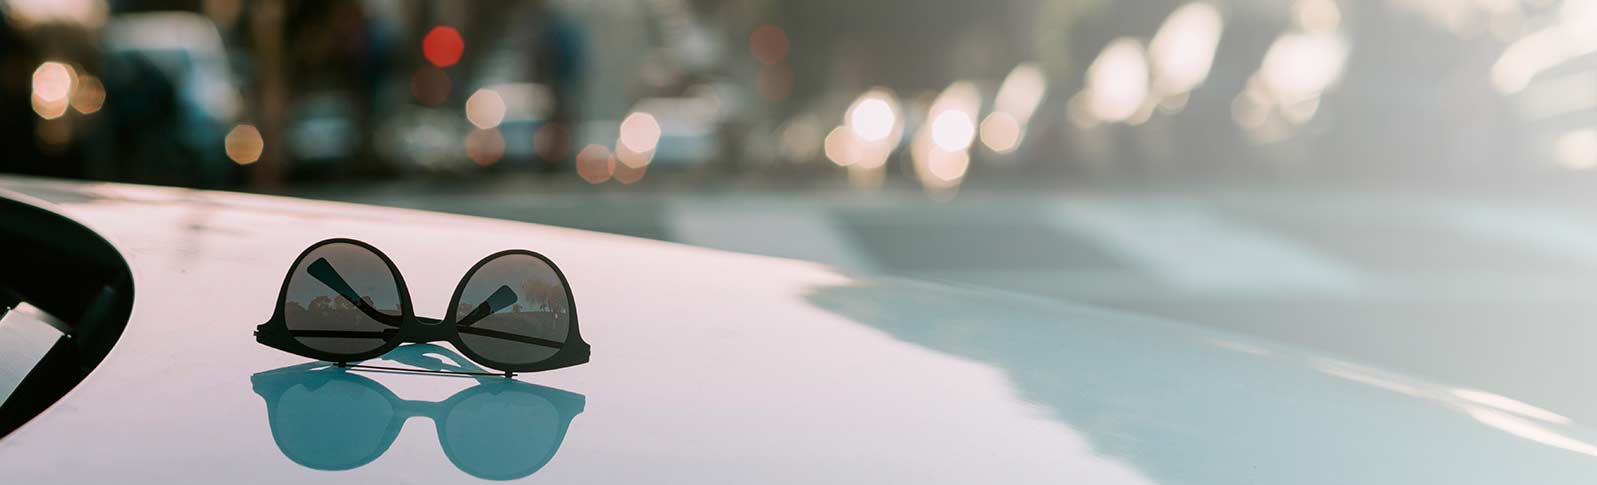 solbriller på en dashbord i en bil